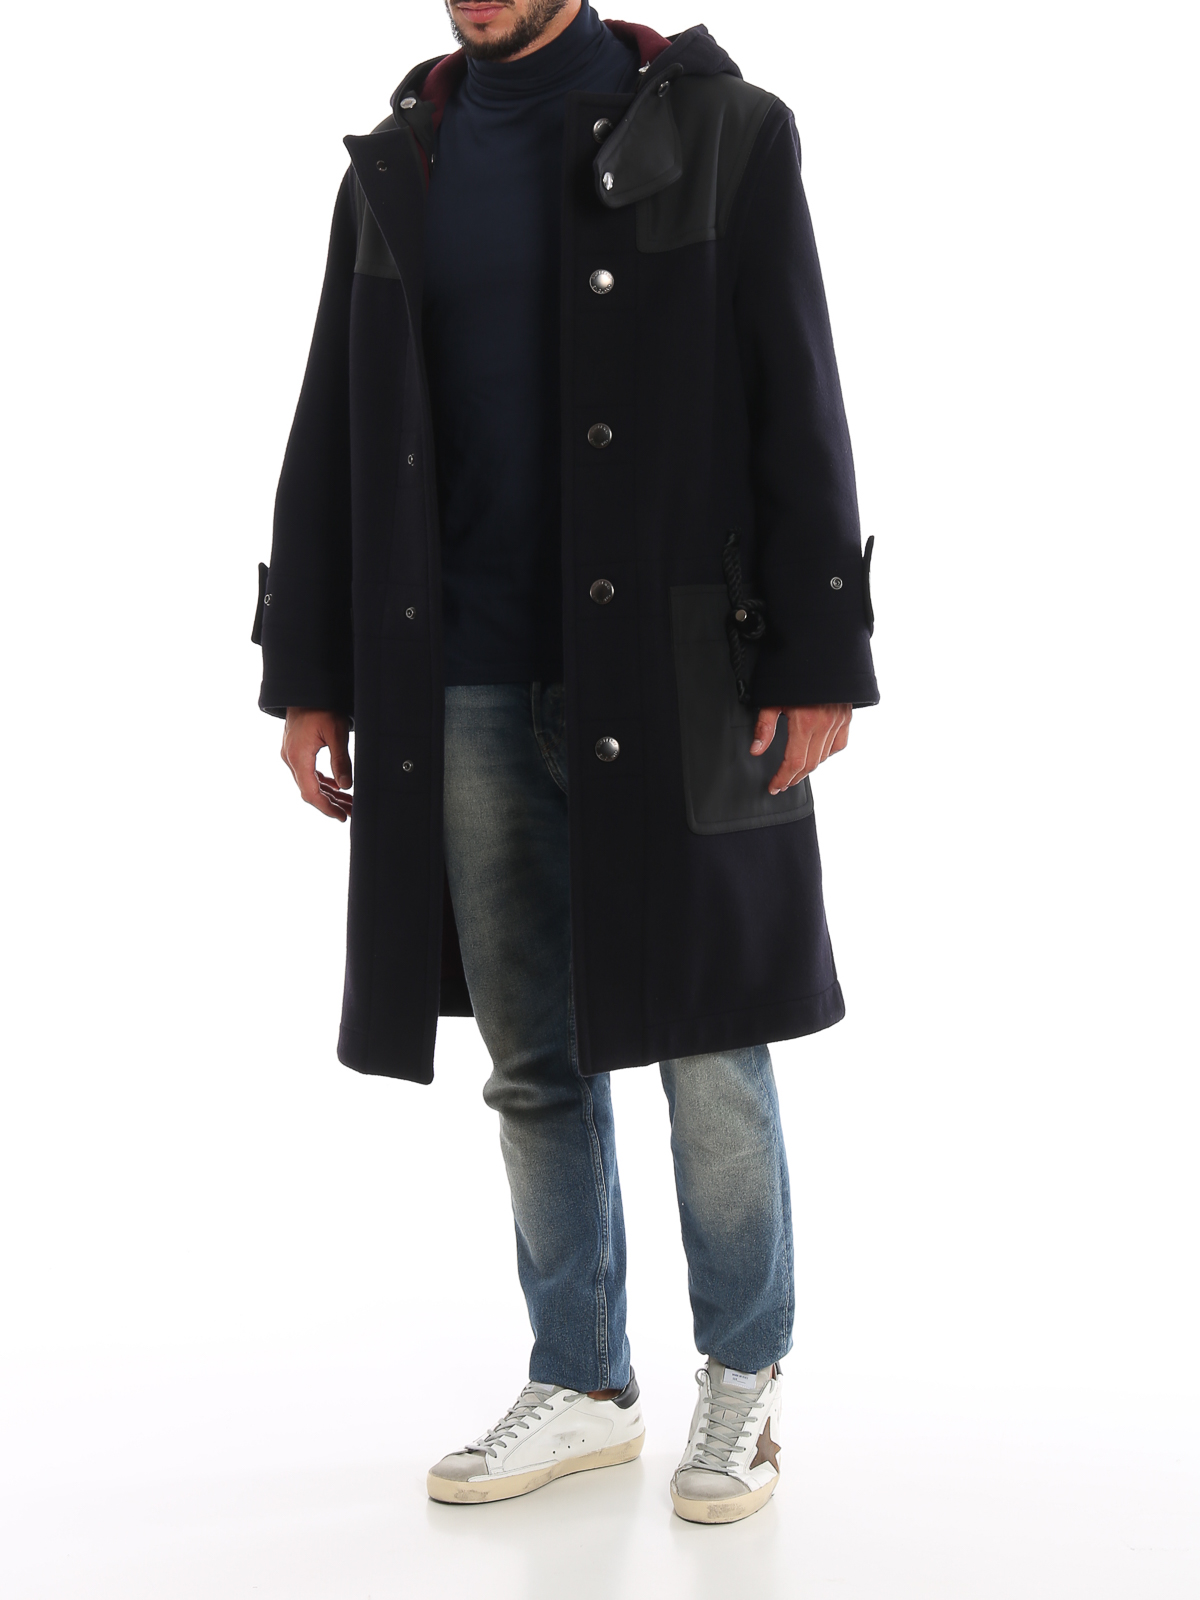 burberry montgomery coat